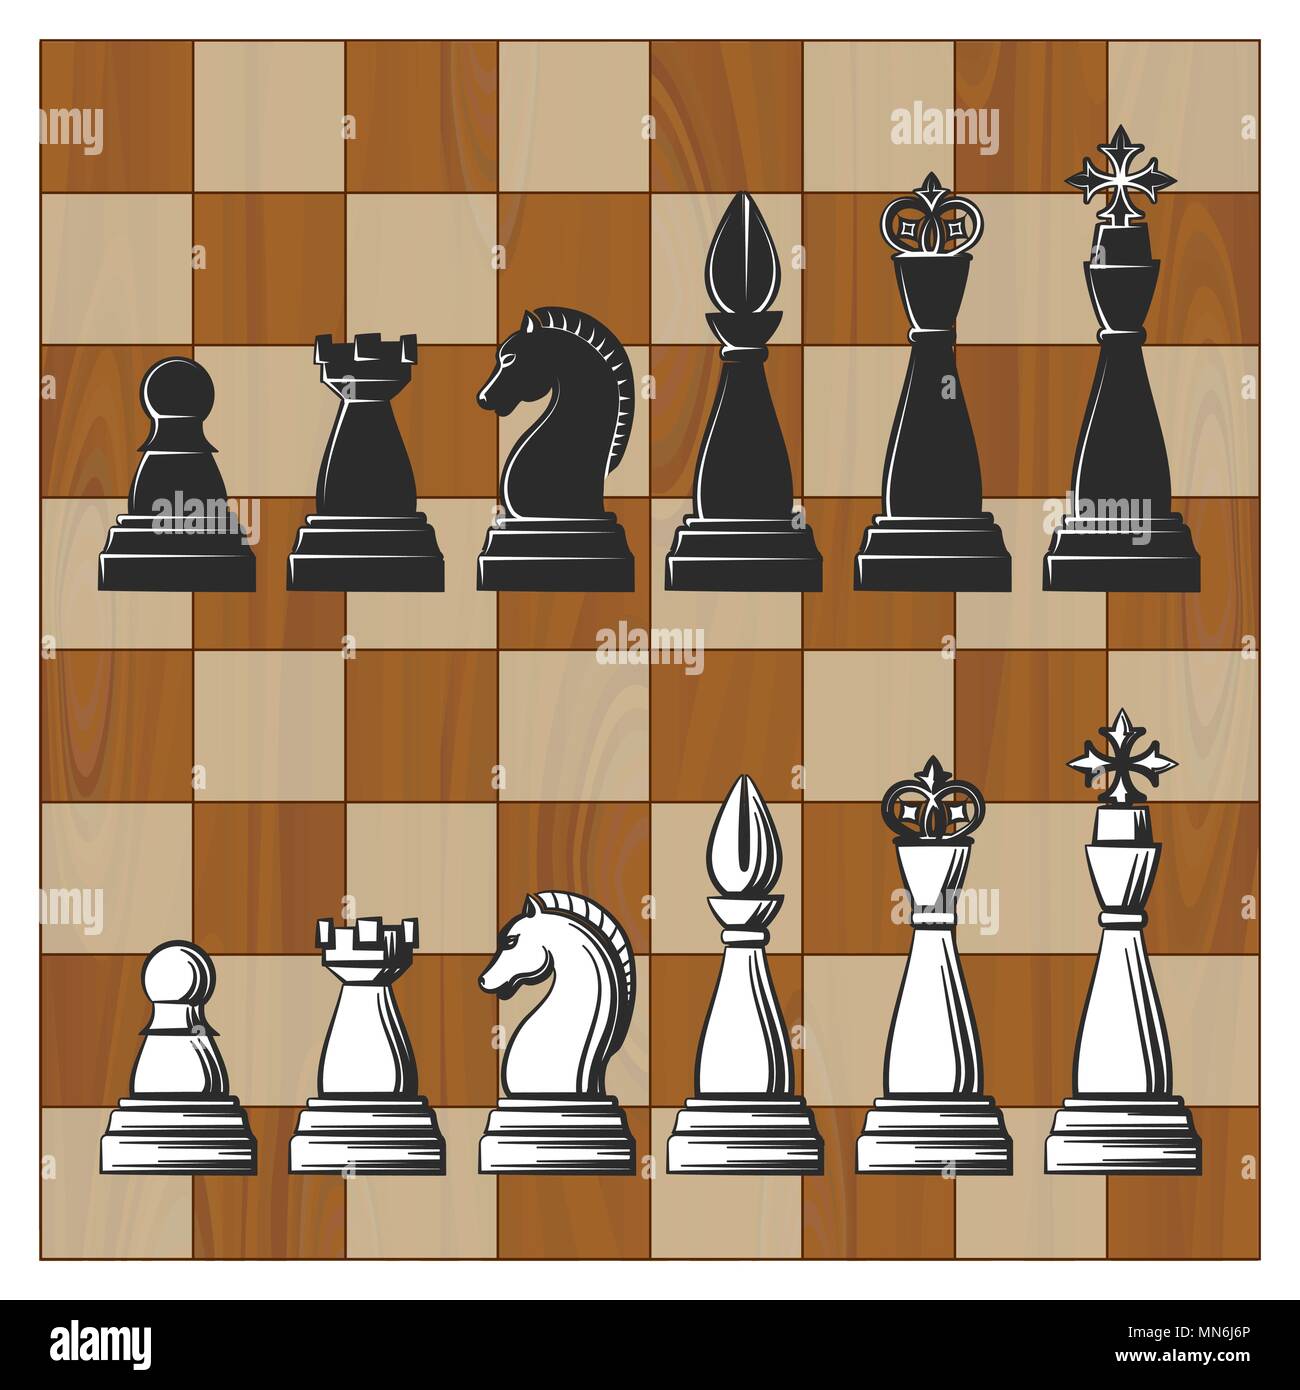 Holz- Schachbrett wth schwarze und weiße Schachfiguren. Vector Illustration. Stock Vektor